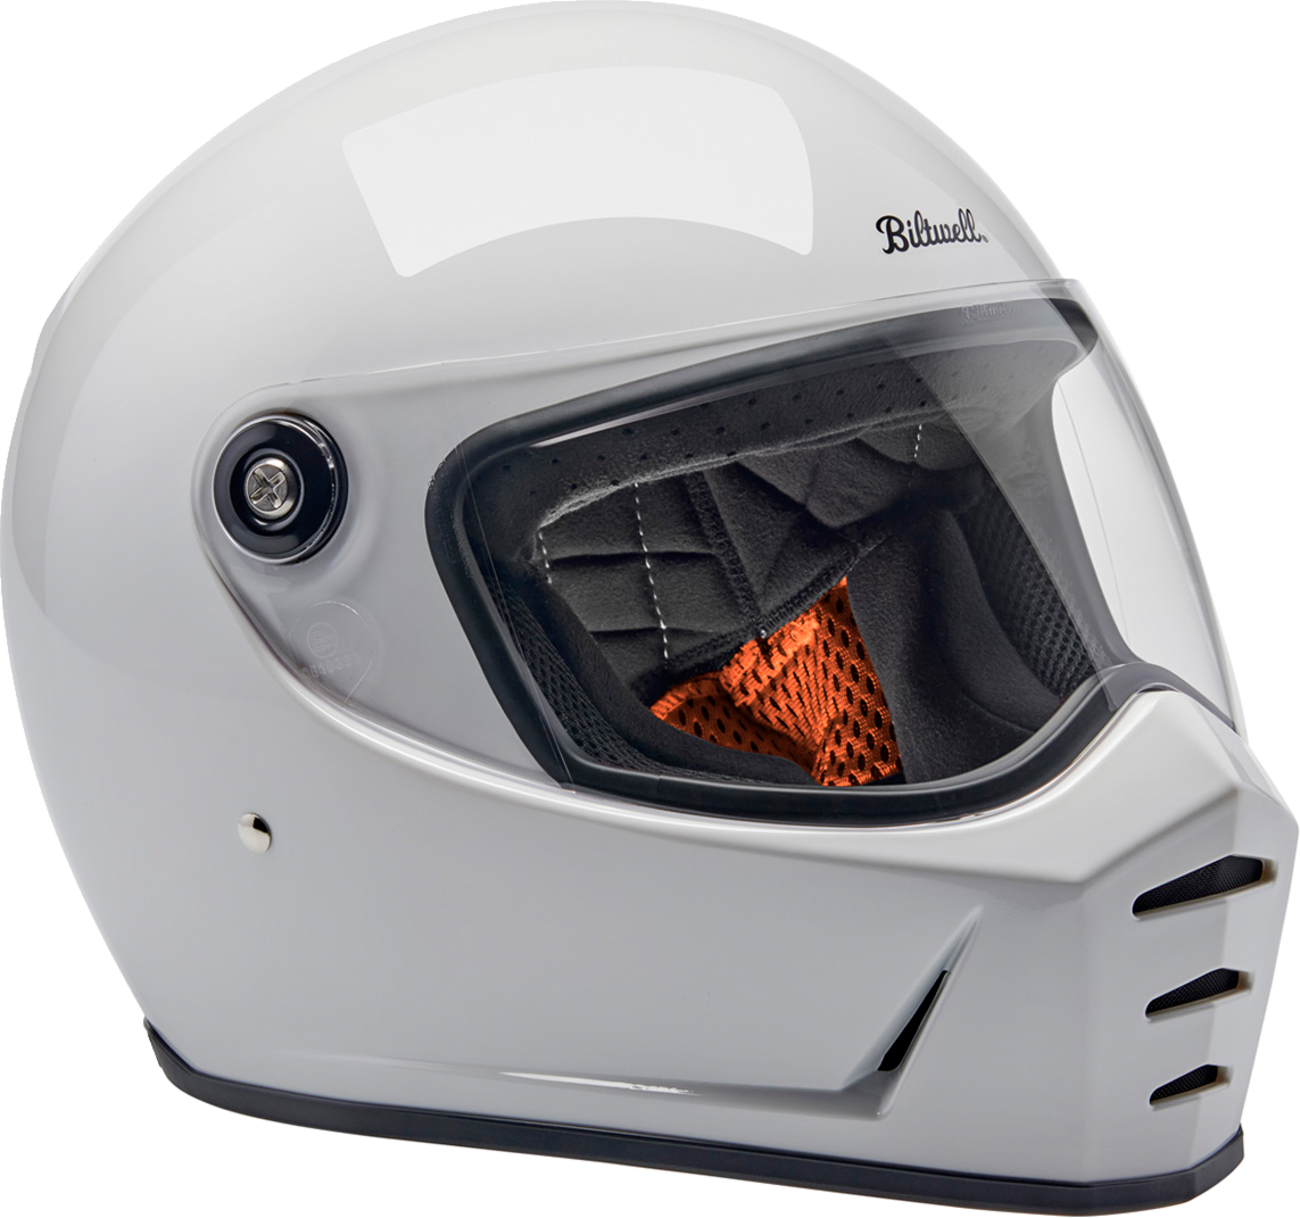 BILTWELL Lane Splitter Helmet - Gloss White - XS 1004-104-501